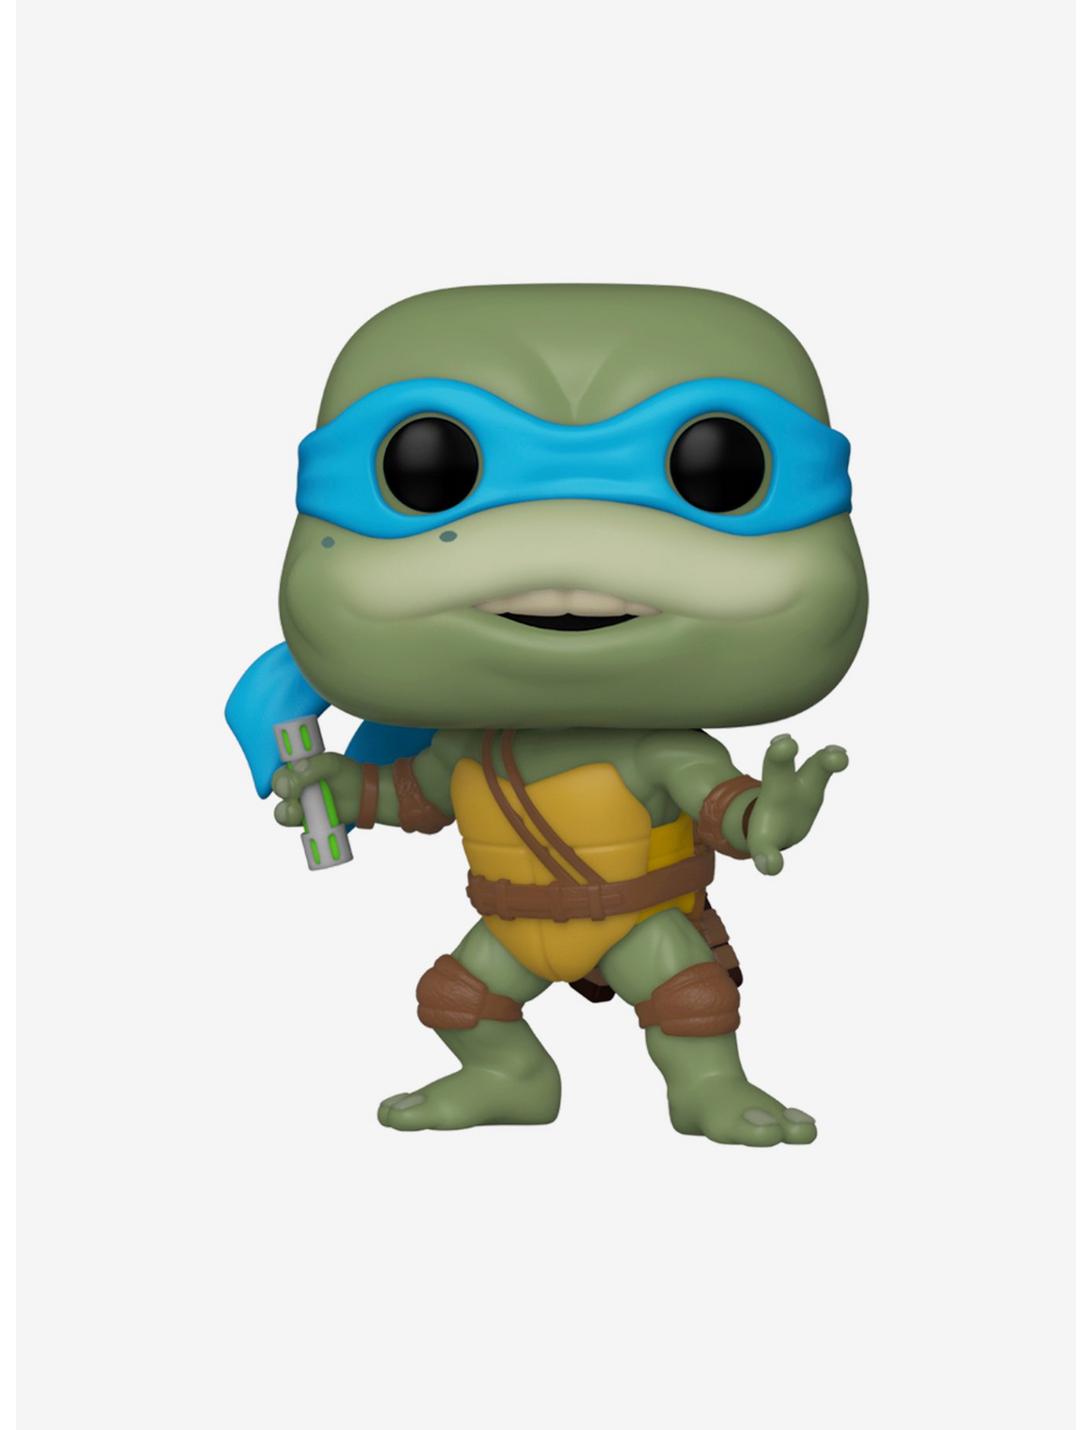 Funko Teenage Mutant Ninja Turtles Pop! Movies Leonardo Vinyl Figure, , hi-res